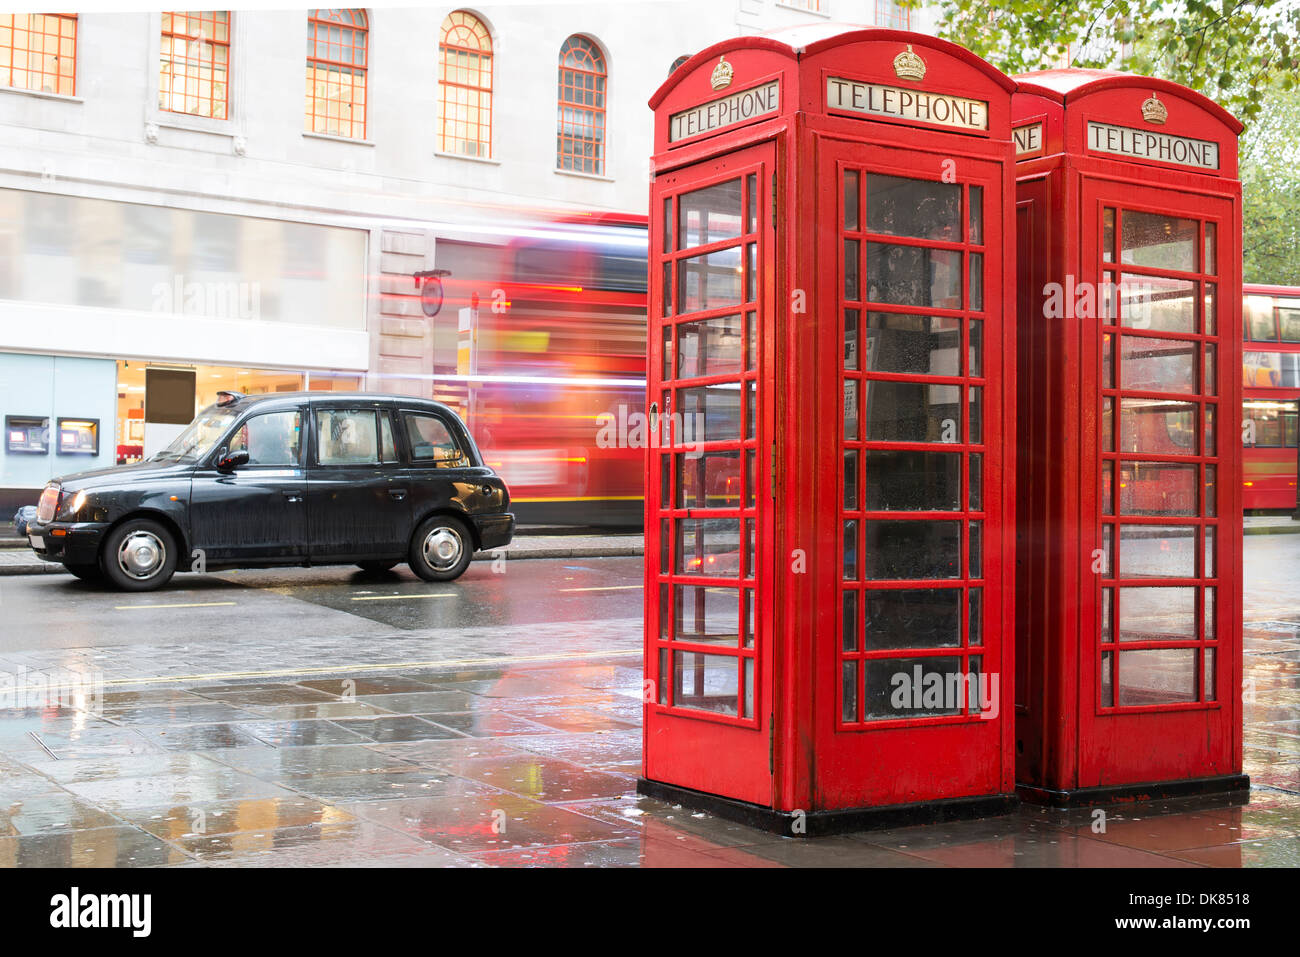 Fiche détaillée Téléphone rouge à Londres et vintage taxi.jour de pluie. Téléphone Vintage monumental cabine Banque D'Images